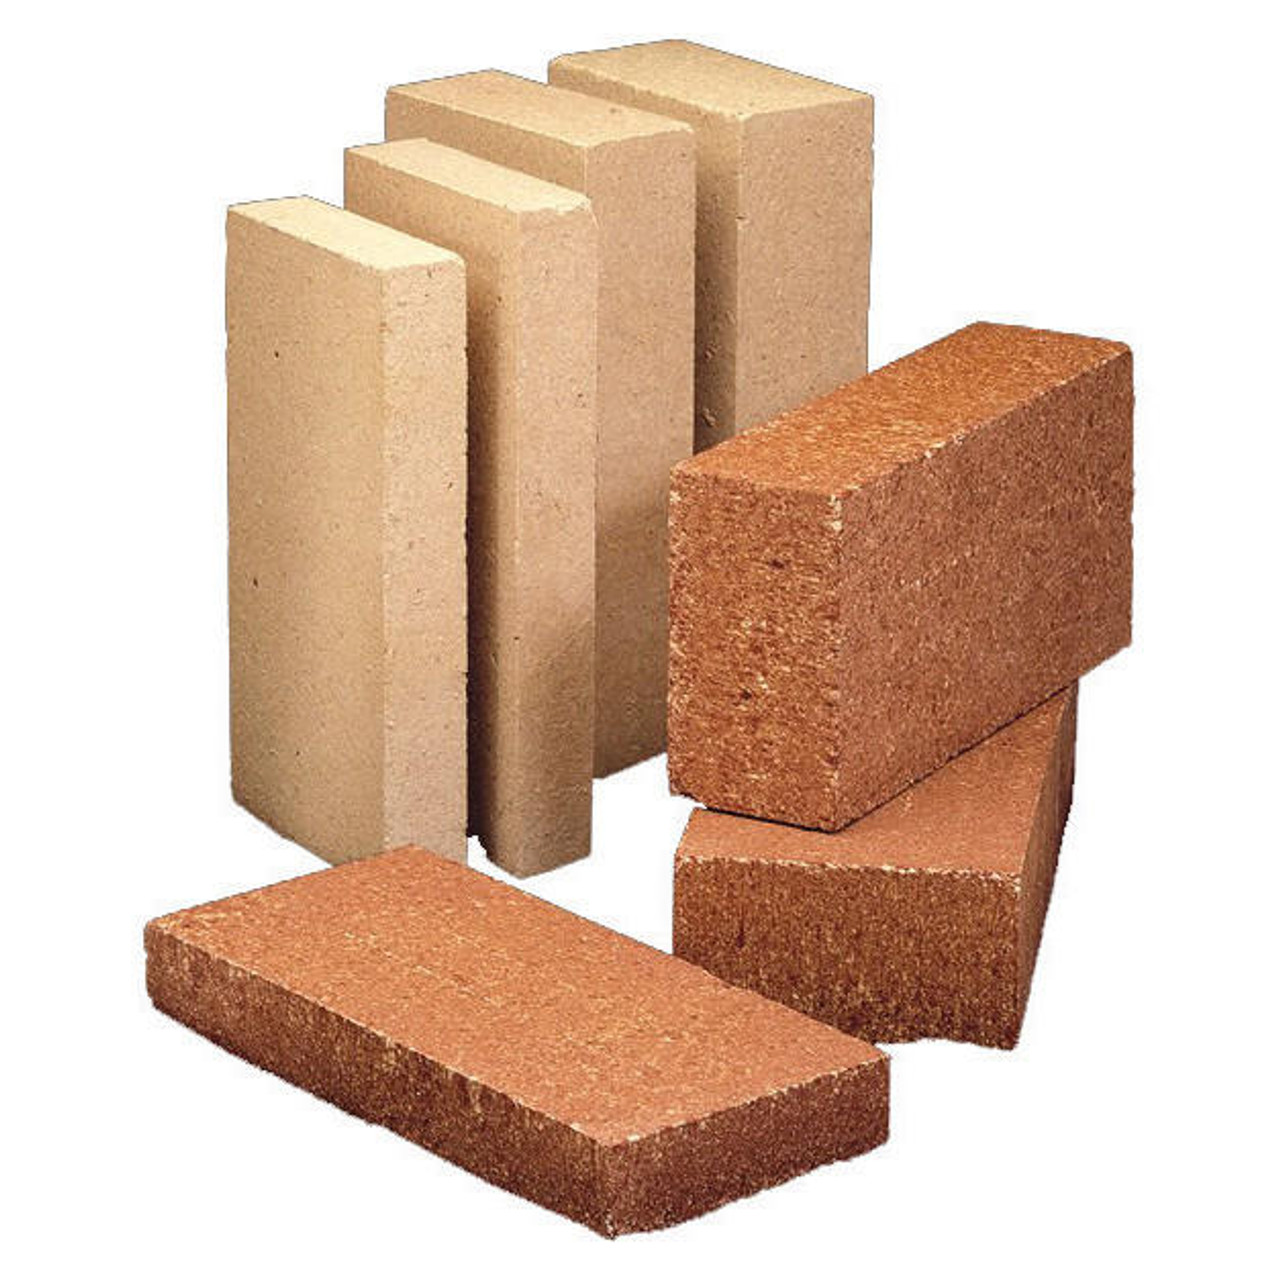 H.C. Muddox 4-1/2 in. x 2-1/2 in. x 9 in. Fire Brick Clay